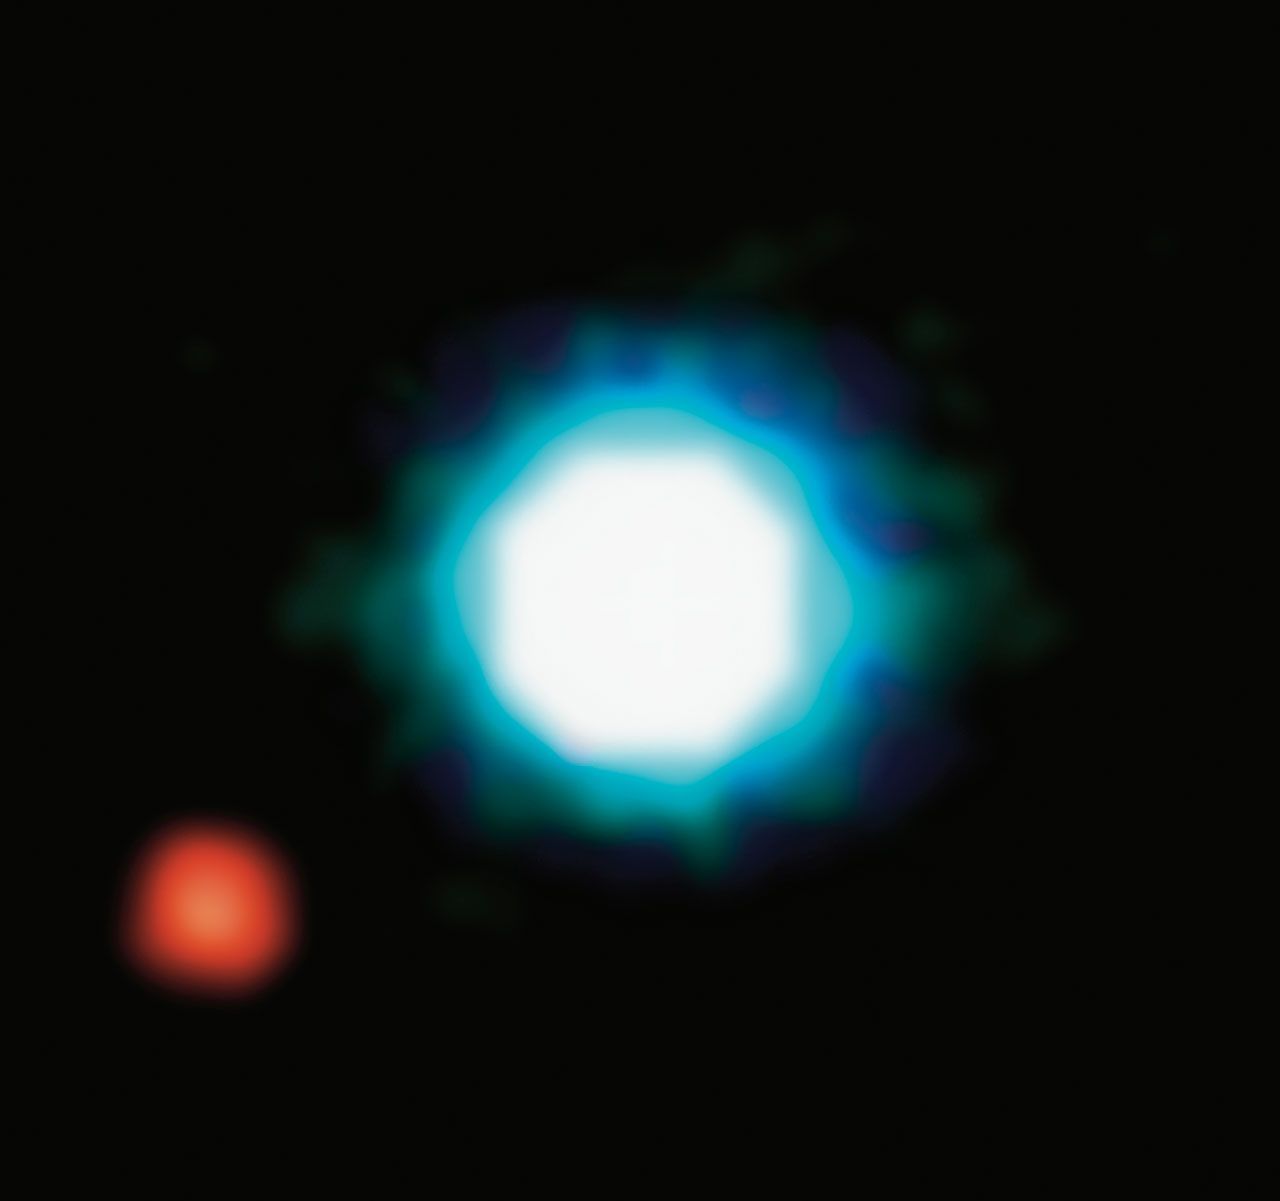 Shooting mit einem Exo-Planeten: 2005 nahm ein Teleskop der Europäischen Südsternwarte in Chile ein Bild von 2M1207b auf. Das Besondere: Er ist fünfmal größer als Jupiter, der größte Planet in unserem Sonnensystem - und doppelt so weit weg wie Neptun, der am weitesten entfernte.